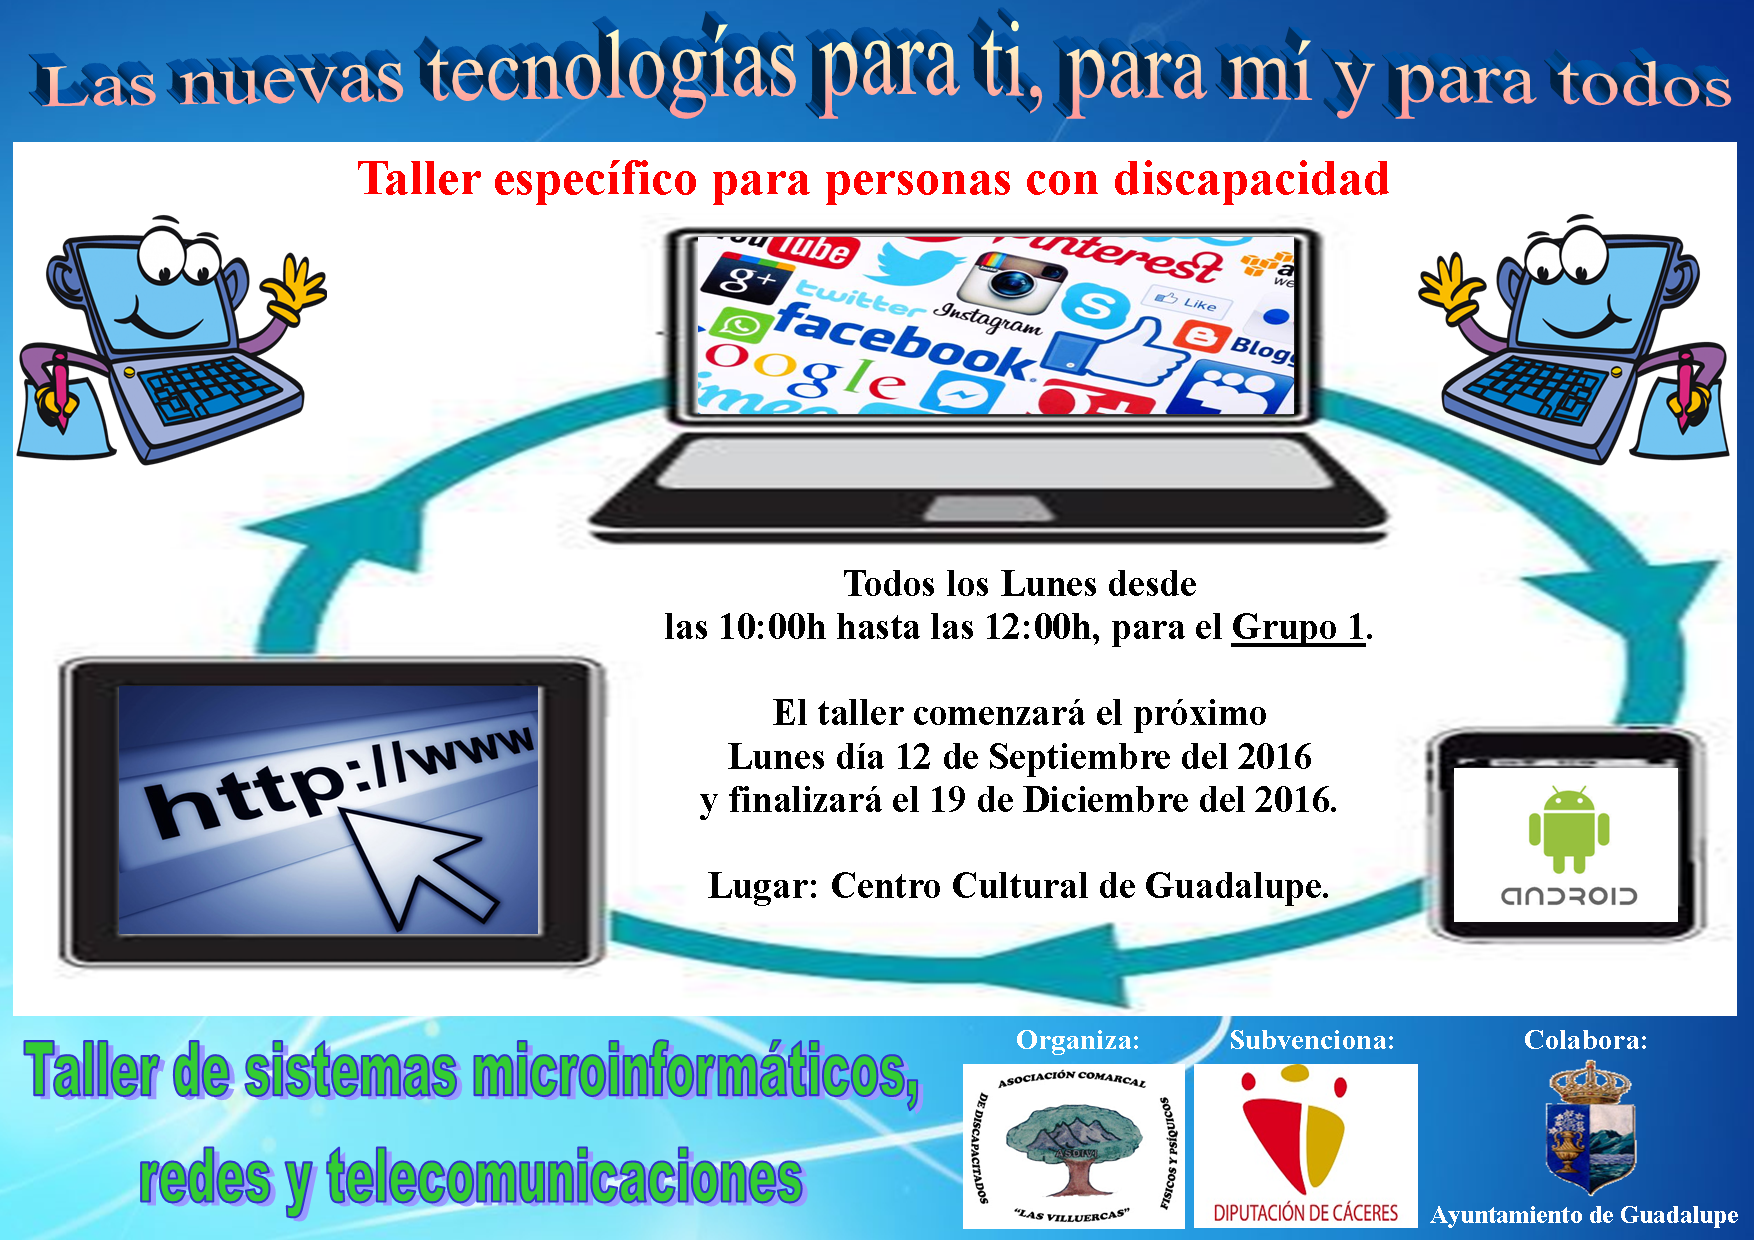 Taller de Sistemas microinformáticos, redes y telecomunicaciones 2016 - Guadalupe 1